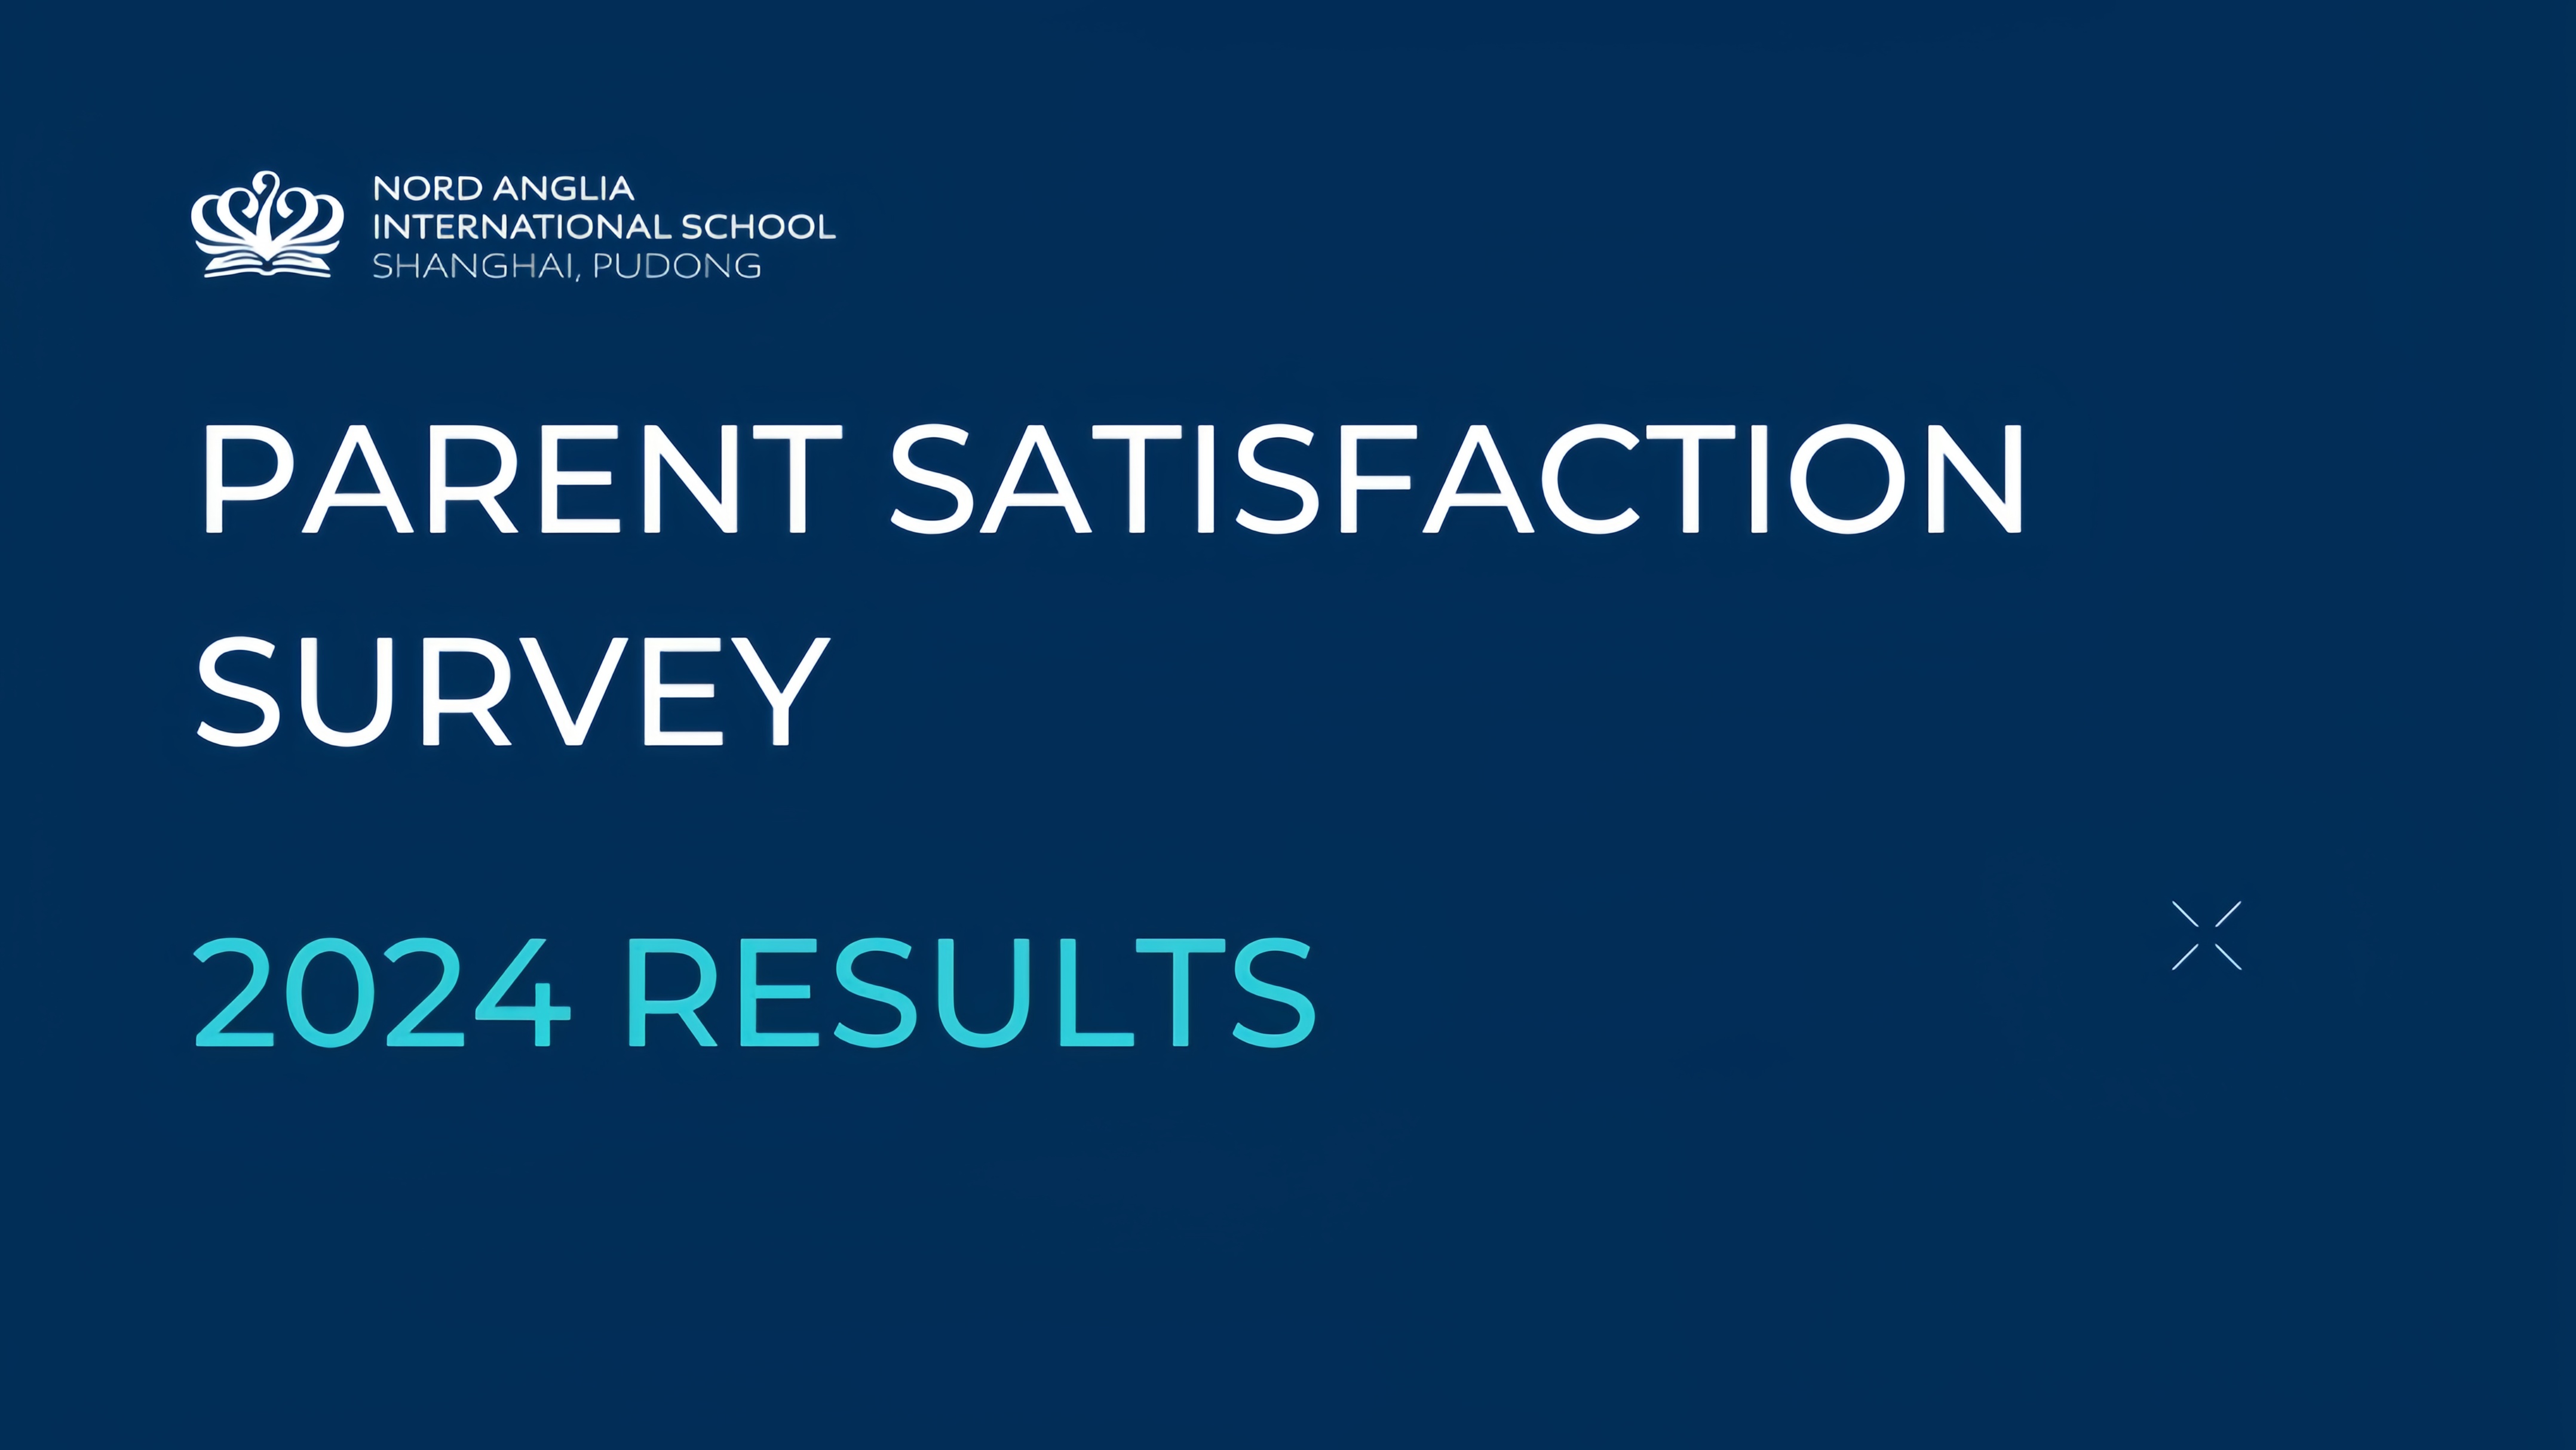 Parent Satisfaction Survey 2024 Results - Parent Satisfaction Survey 2024 Results